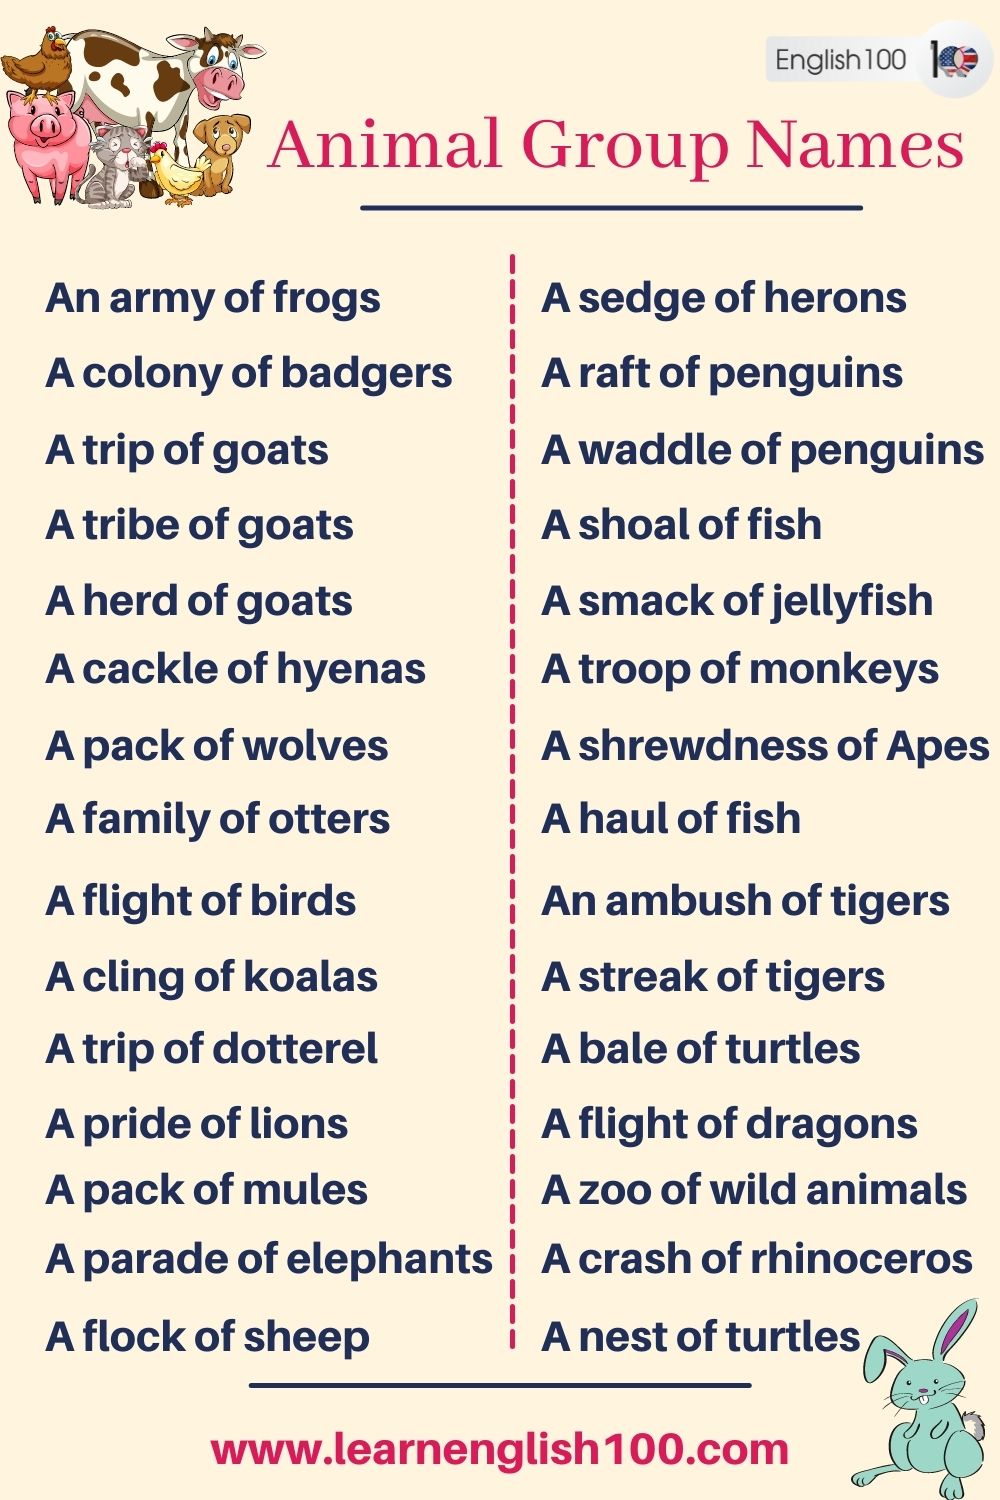 animal group names - English 100